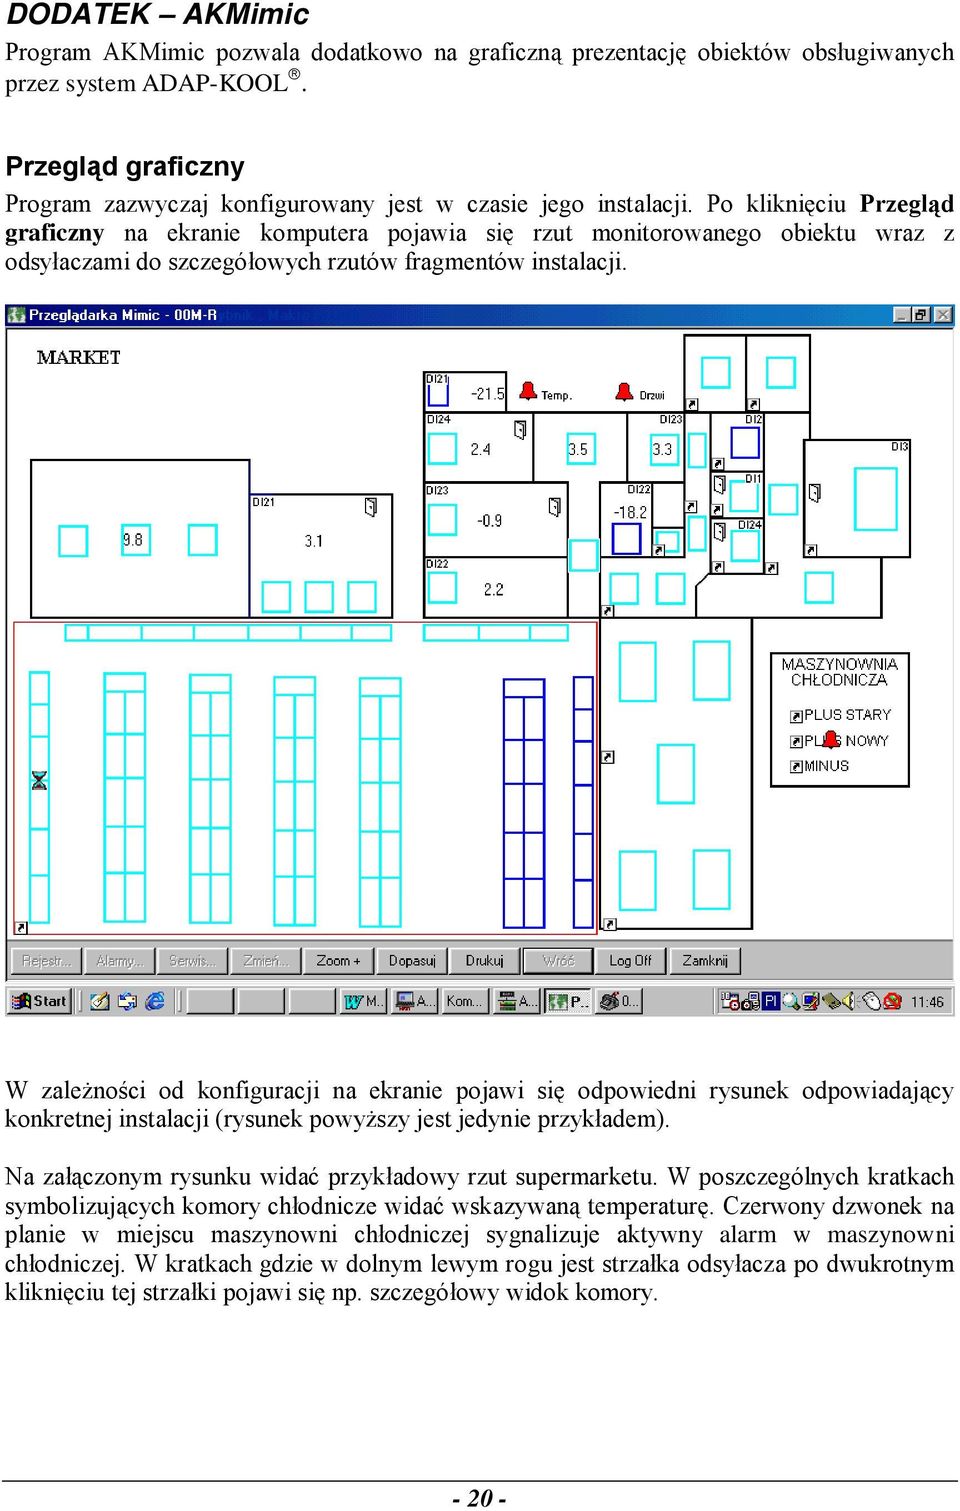 Po kliknięciu Przegląd graficzny na ekranie komputera pojawia się rzut monitorowanego obiektu wraz z odsyłaczami do szczegółowych rzutów fragmentów instalacji.